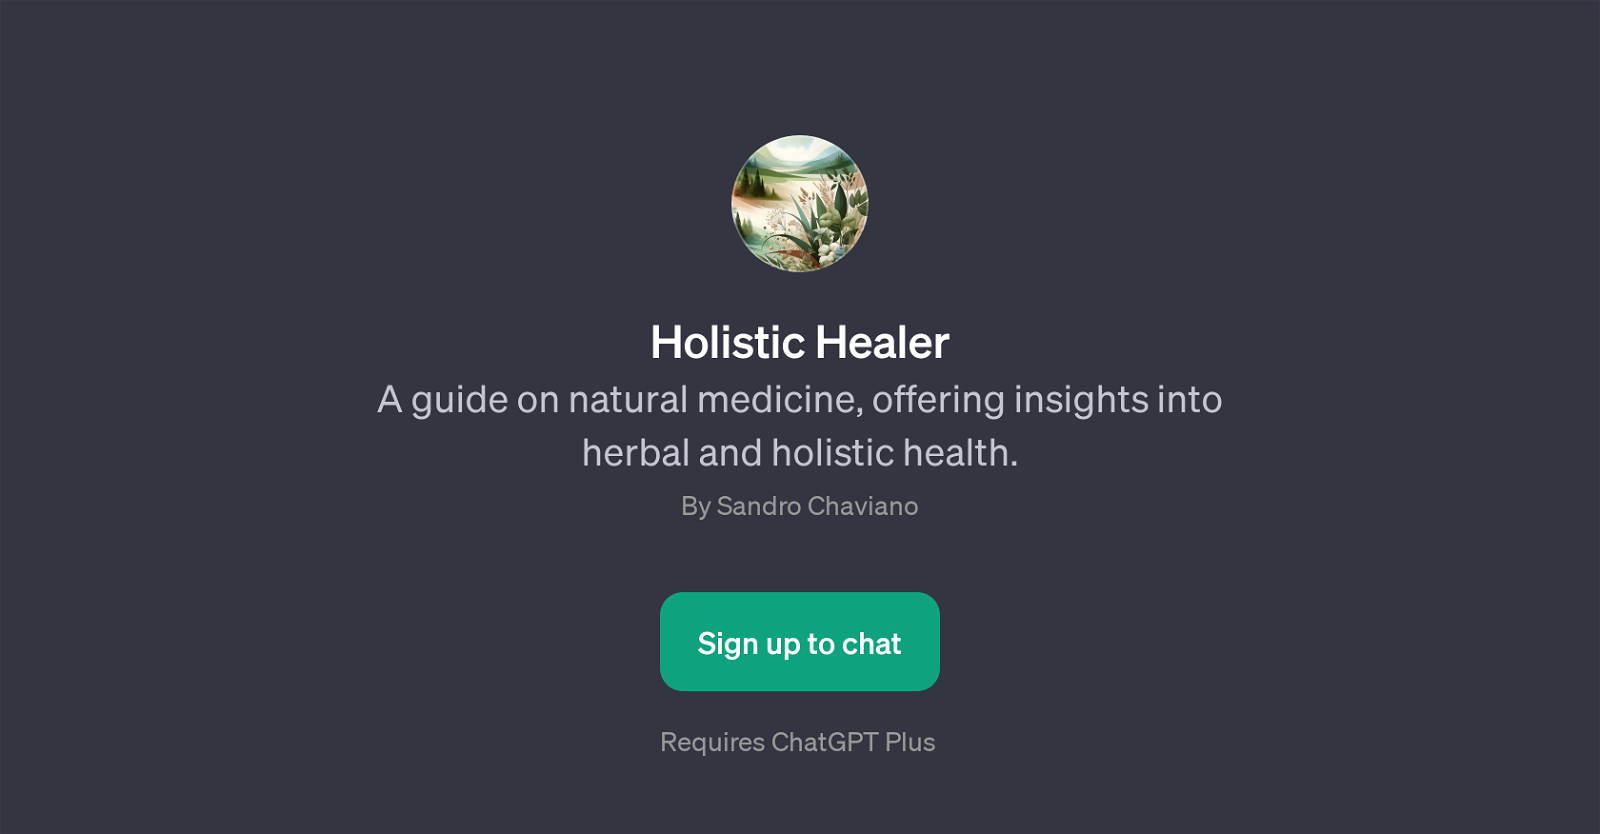 Holistic Healer website